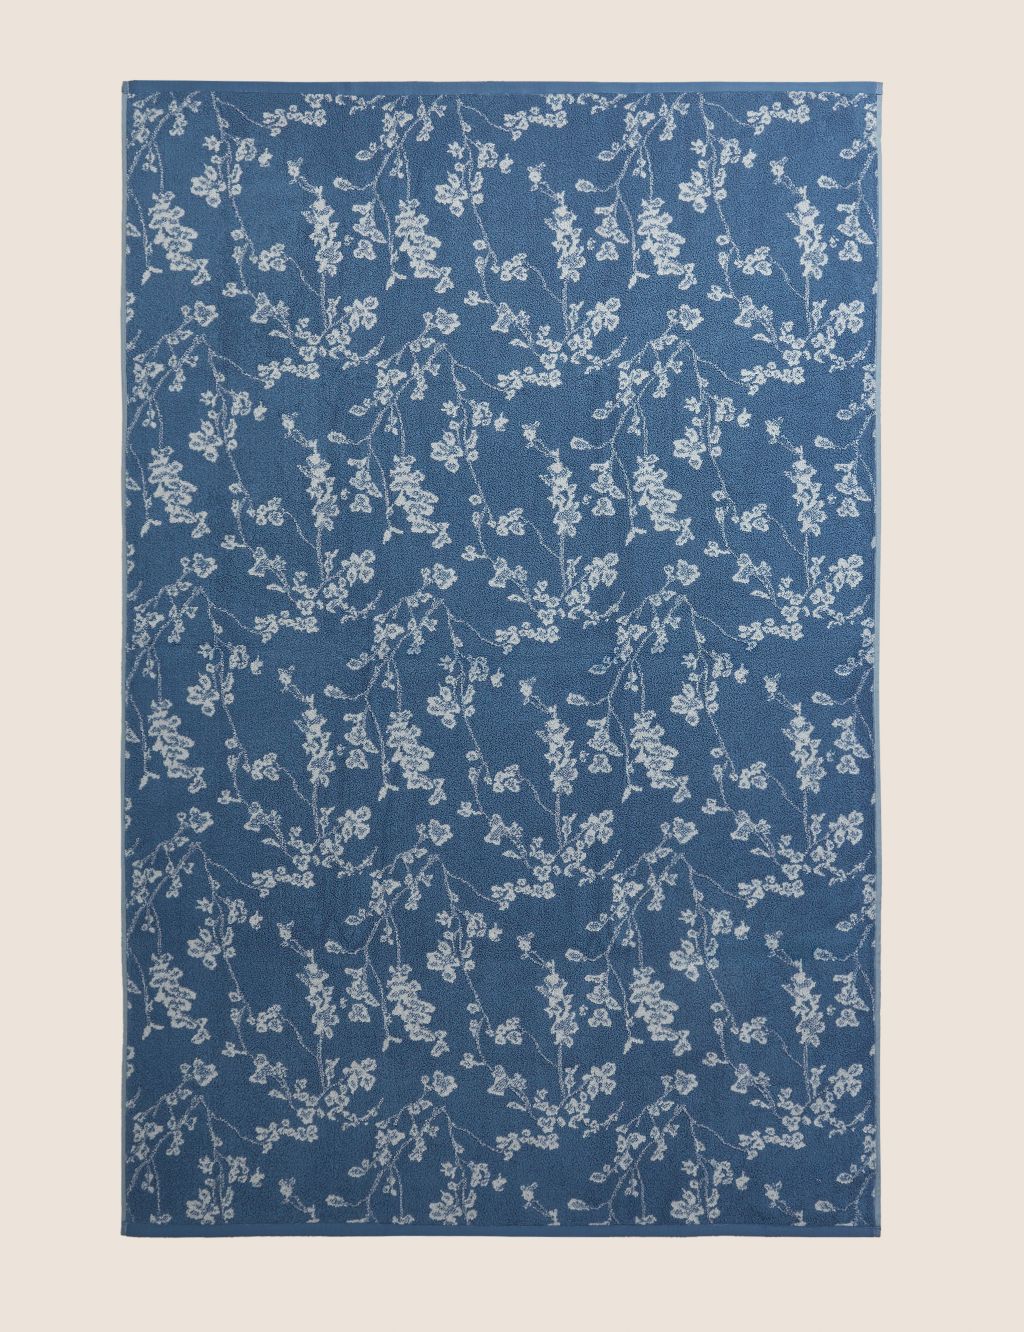 Super Soft Pure Cotton Floral Jacquard Towel image 6